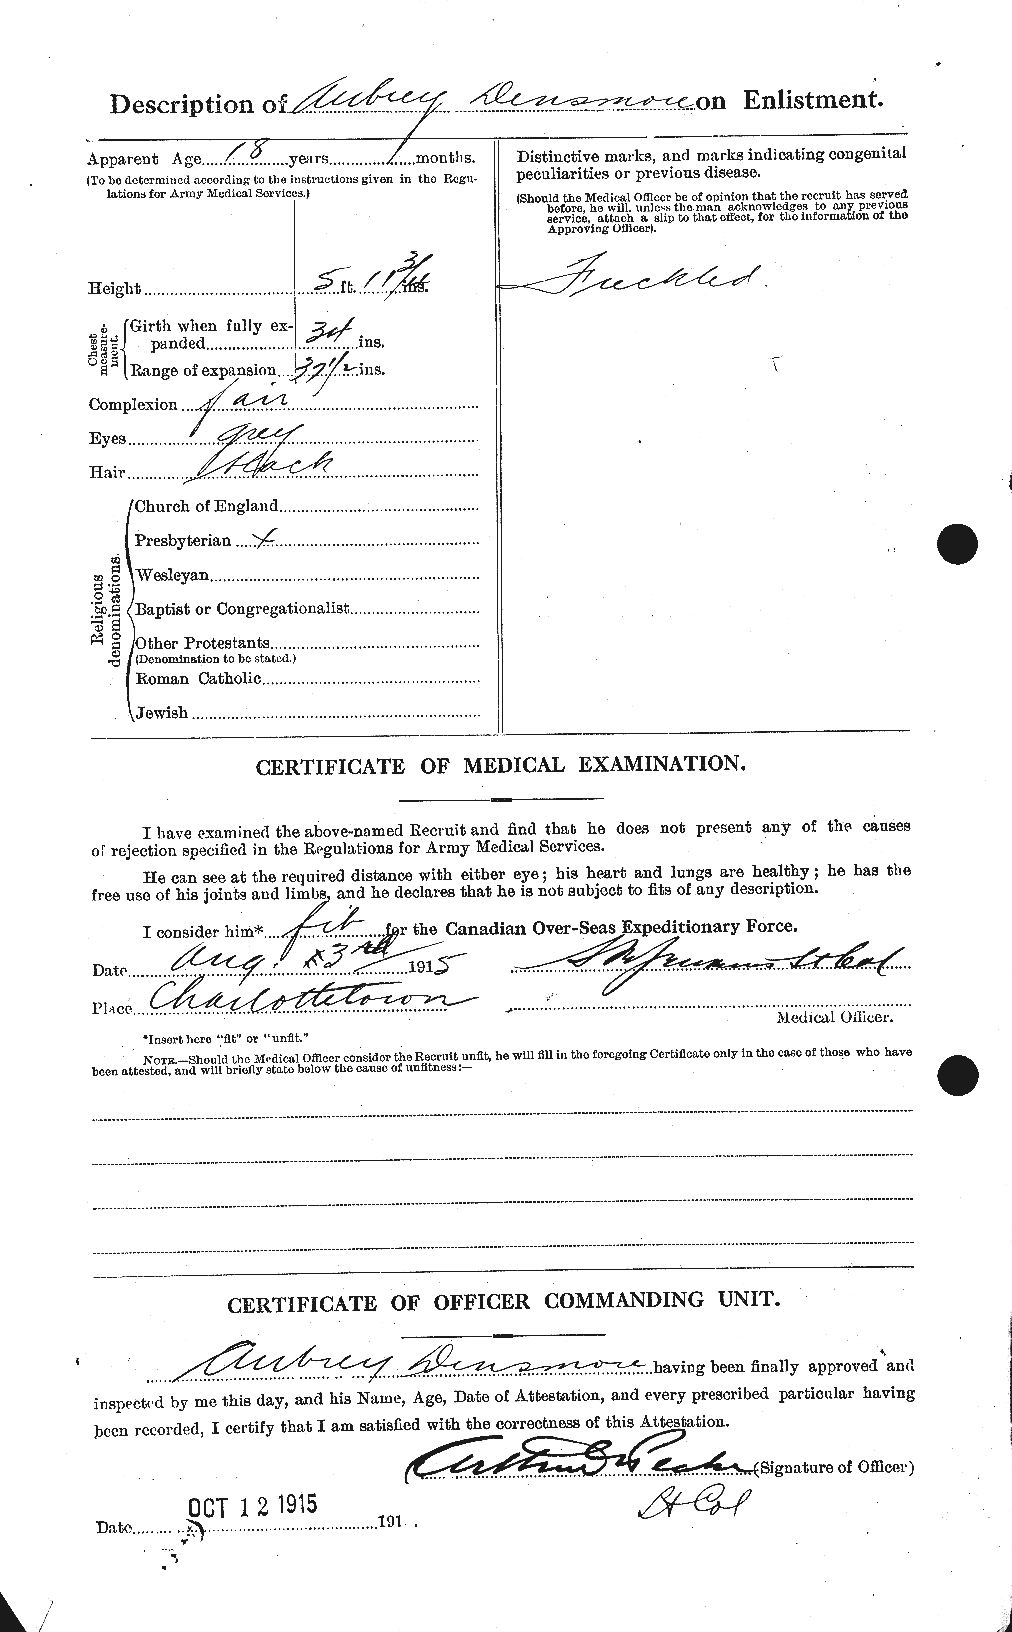 Dossiers du Personnel de la Première Guerre mondiale - CEC 286420b